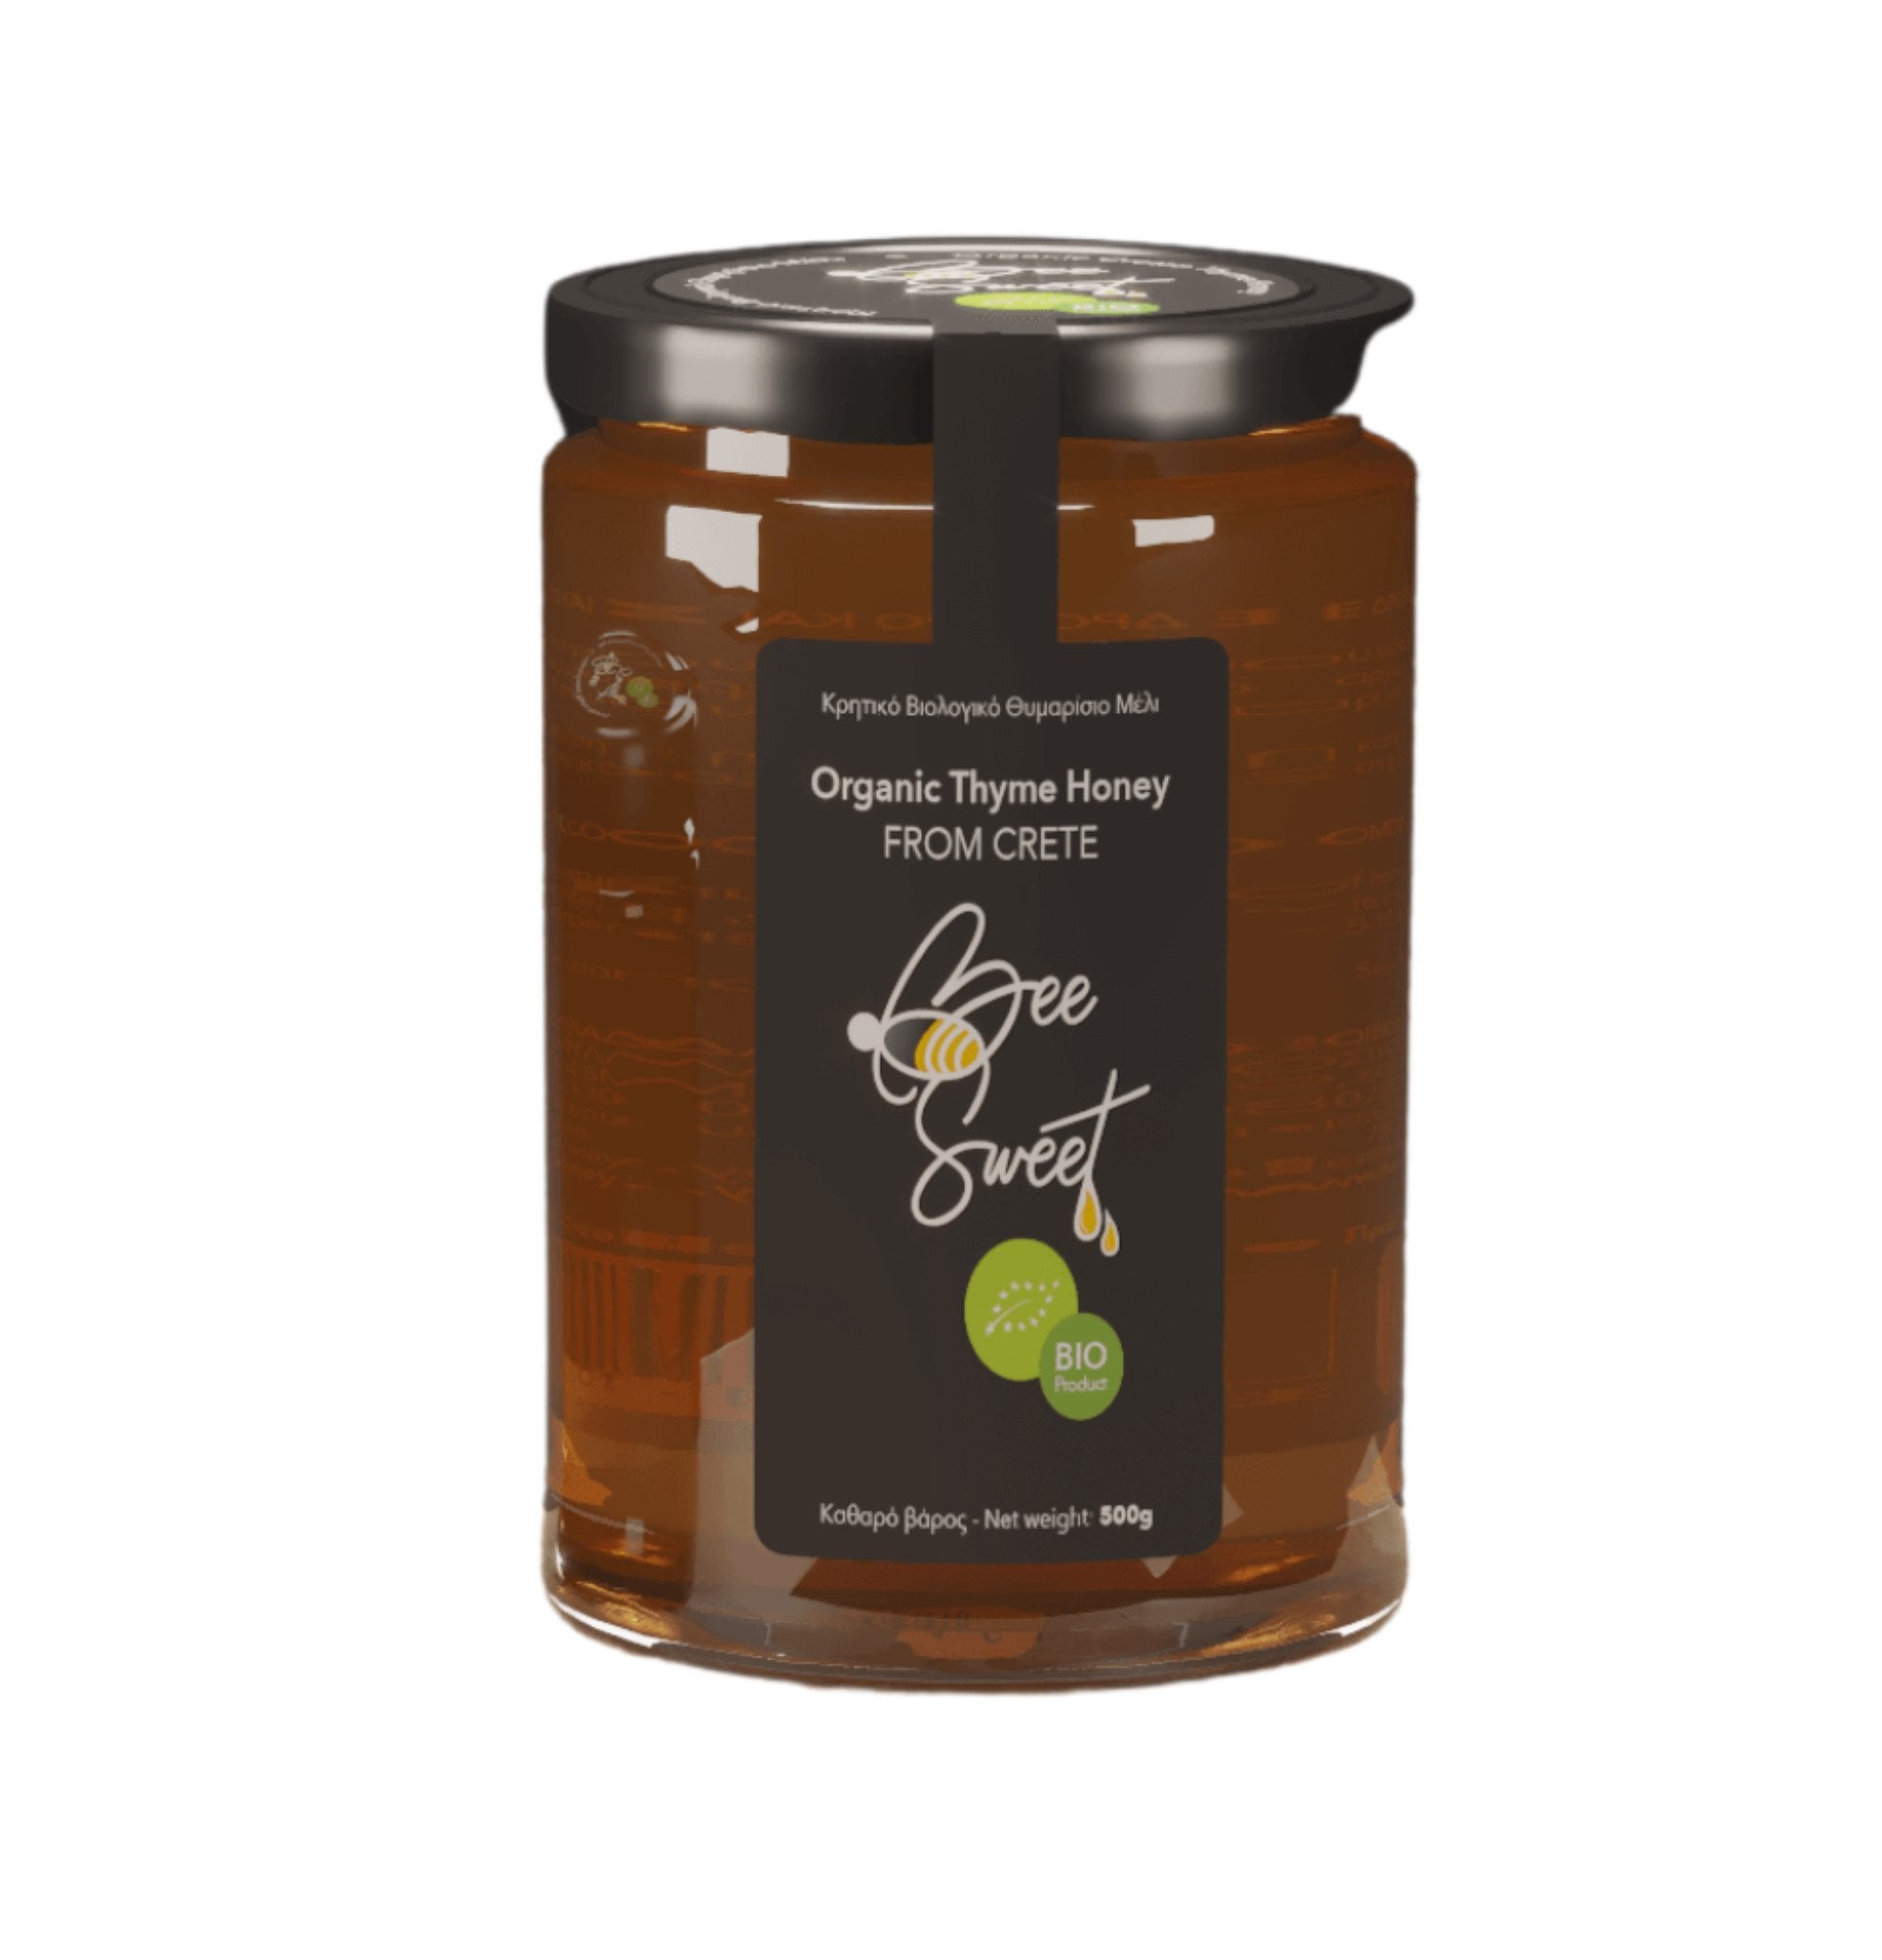 Organic Thyme Honey - The Bio Foods